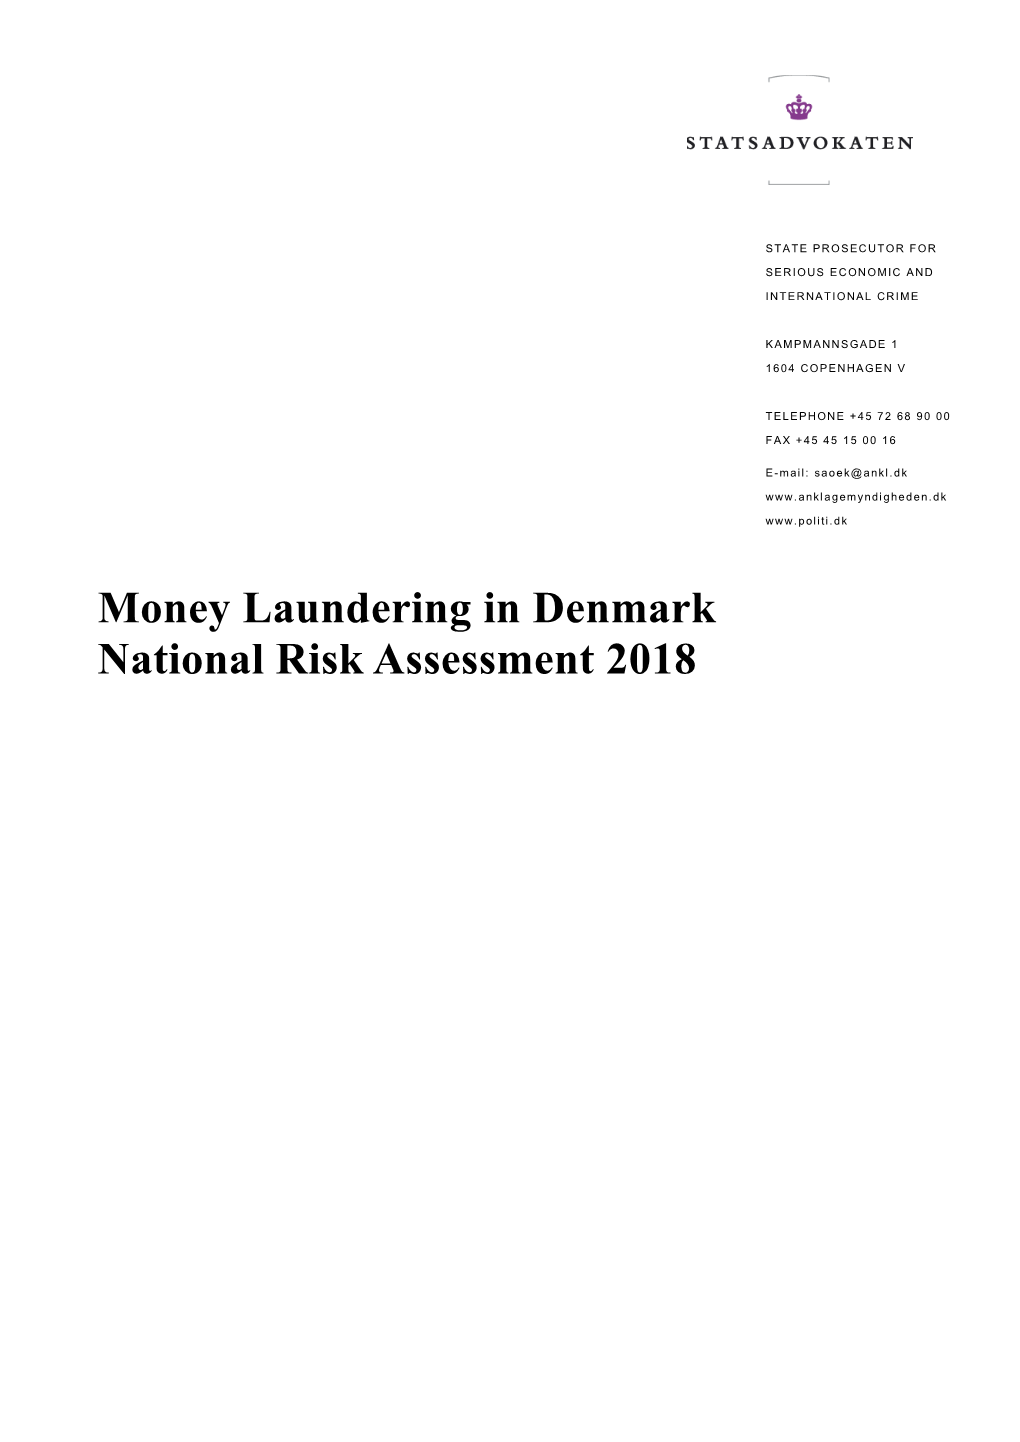 Money Laundering in Denmark National Risk Assessment 2018